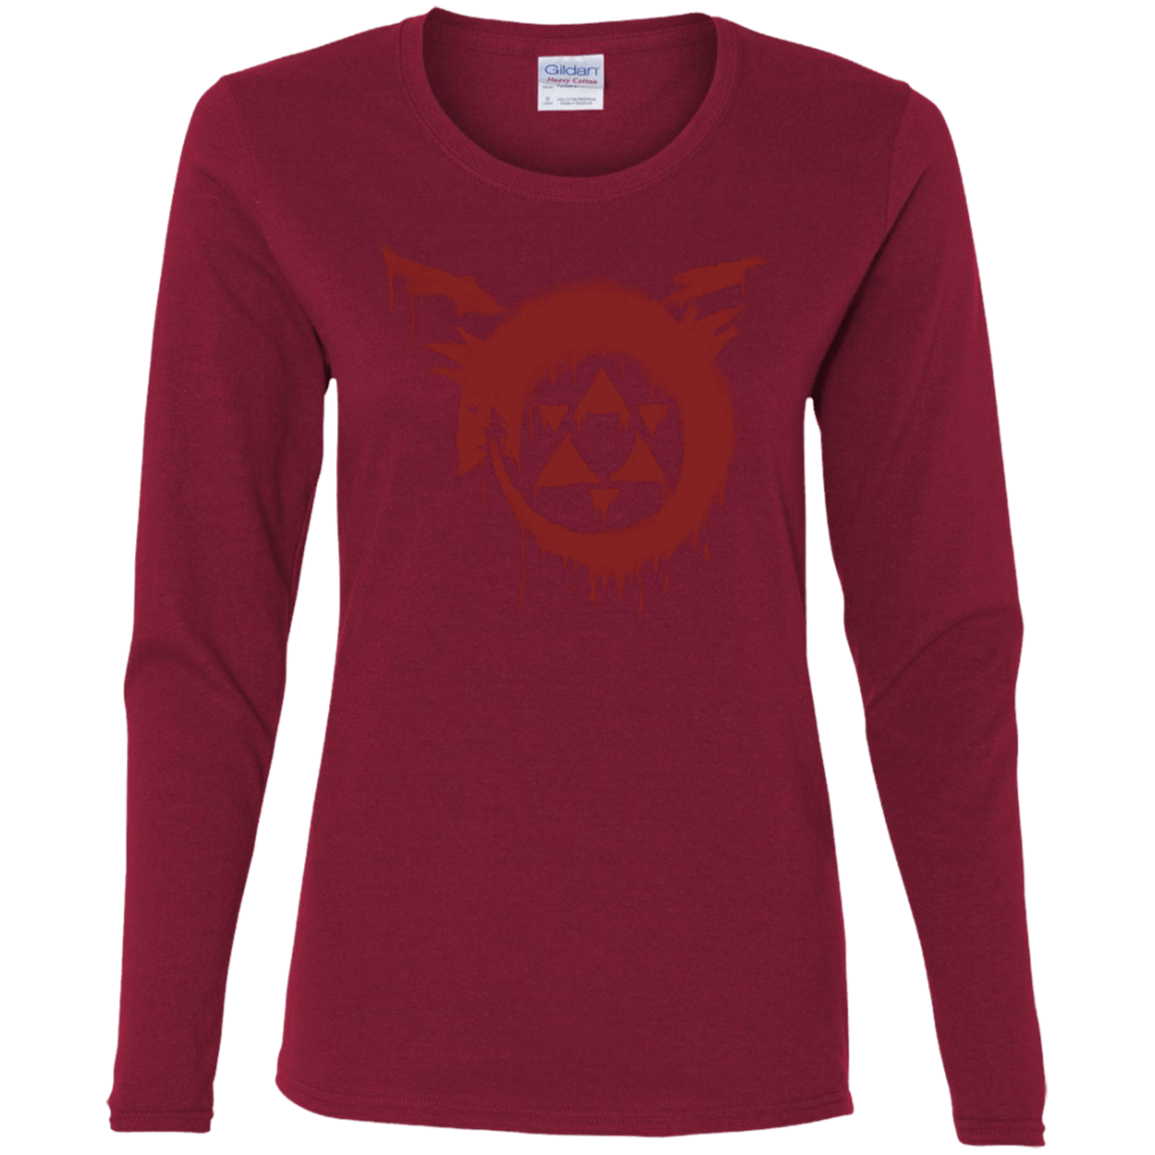 T-Shirts Cardinal / S Homunculus Women's Long Sleeve T-Shirt